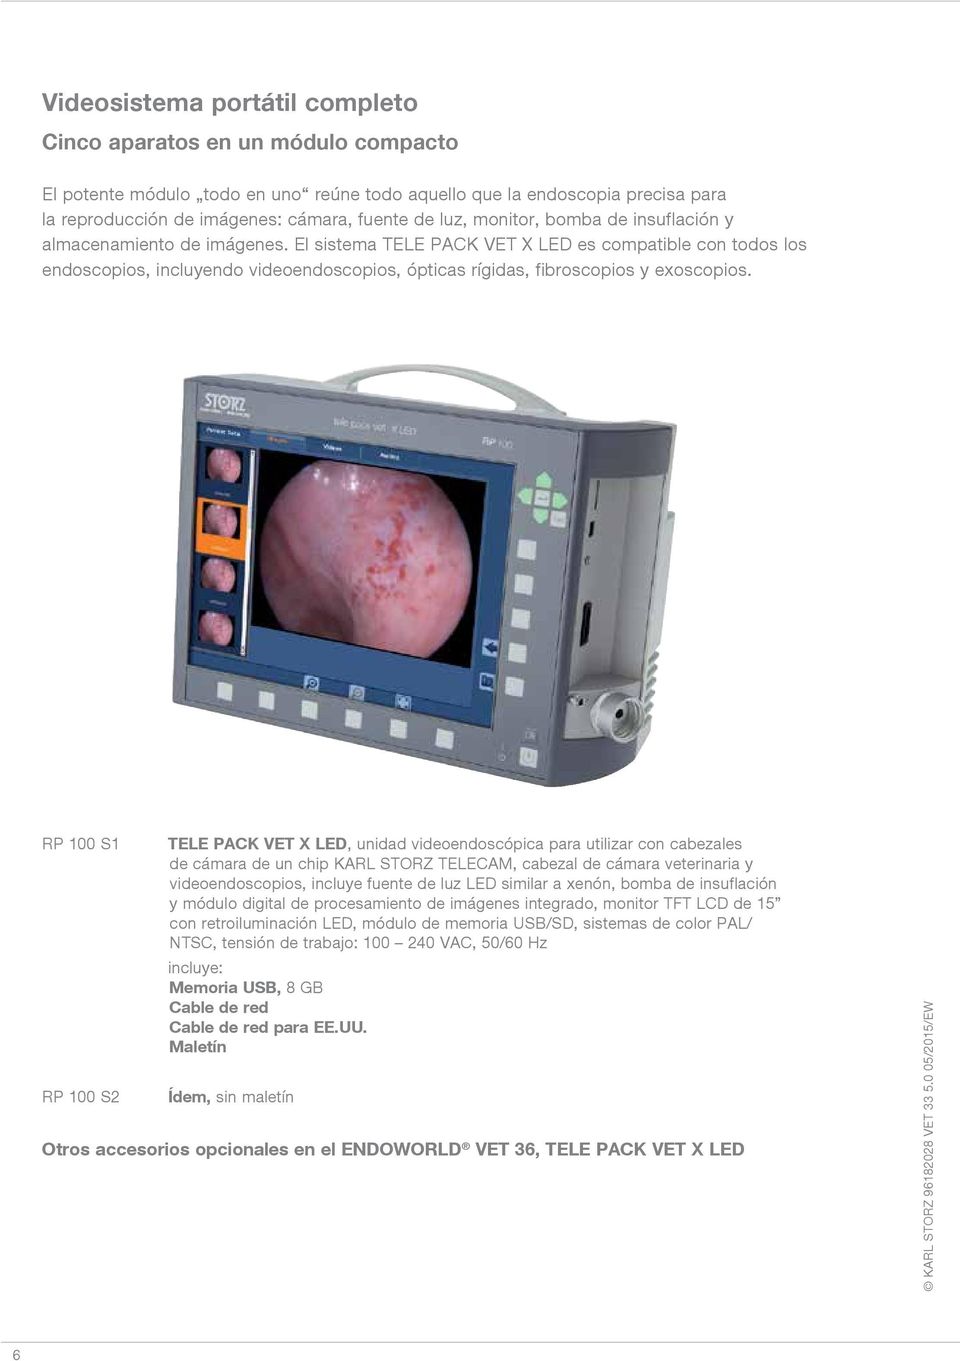 El sistema TELE PACK VET X LED es compatible con todos los endoscopios, incluyendo videoendoscopios, ópticas rígidas, fibroscopios y exoscopios.